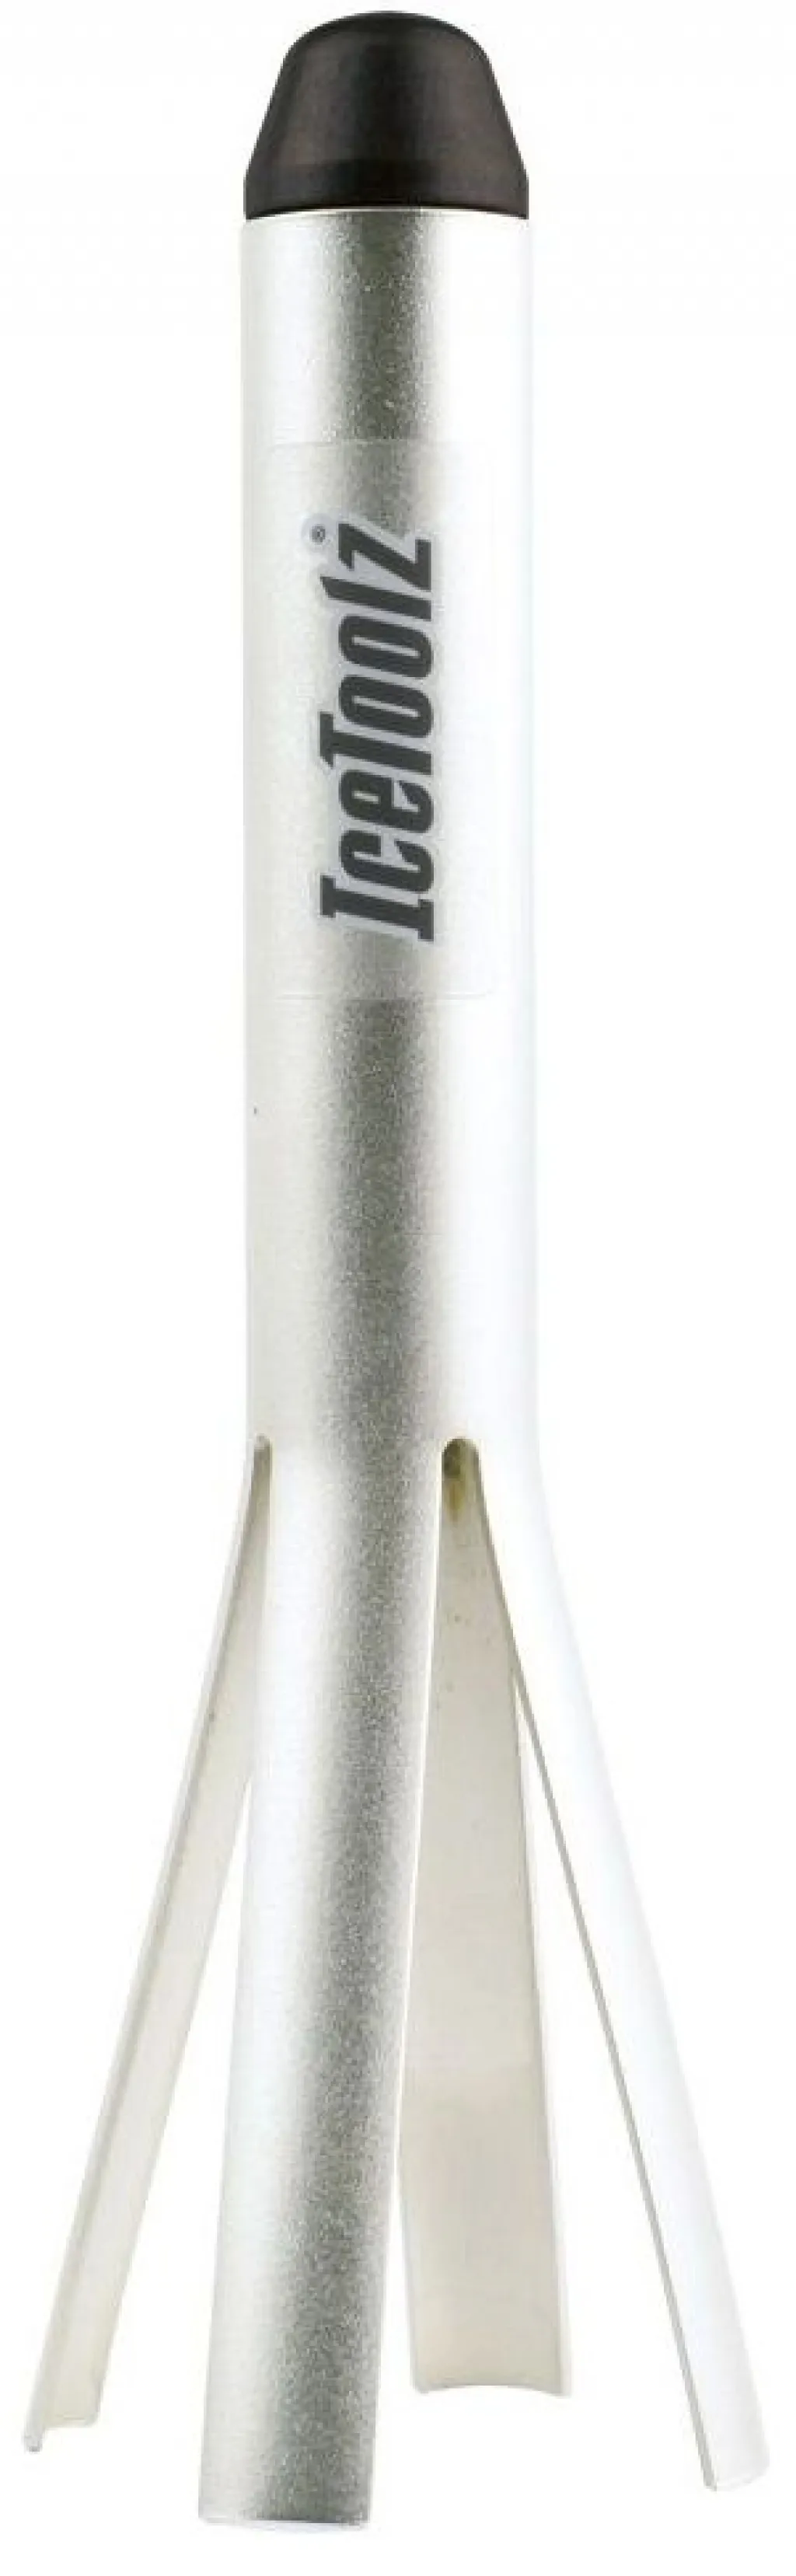 Инструмент ICE TOOLZ E294 для съёма подшипников, для внутреннего диаметра 46 мм кареточных стаканов